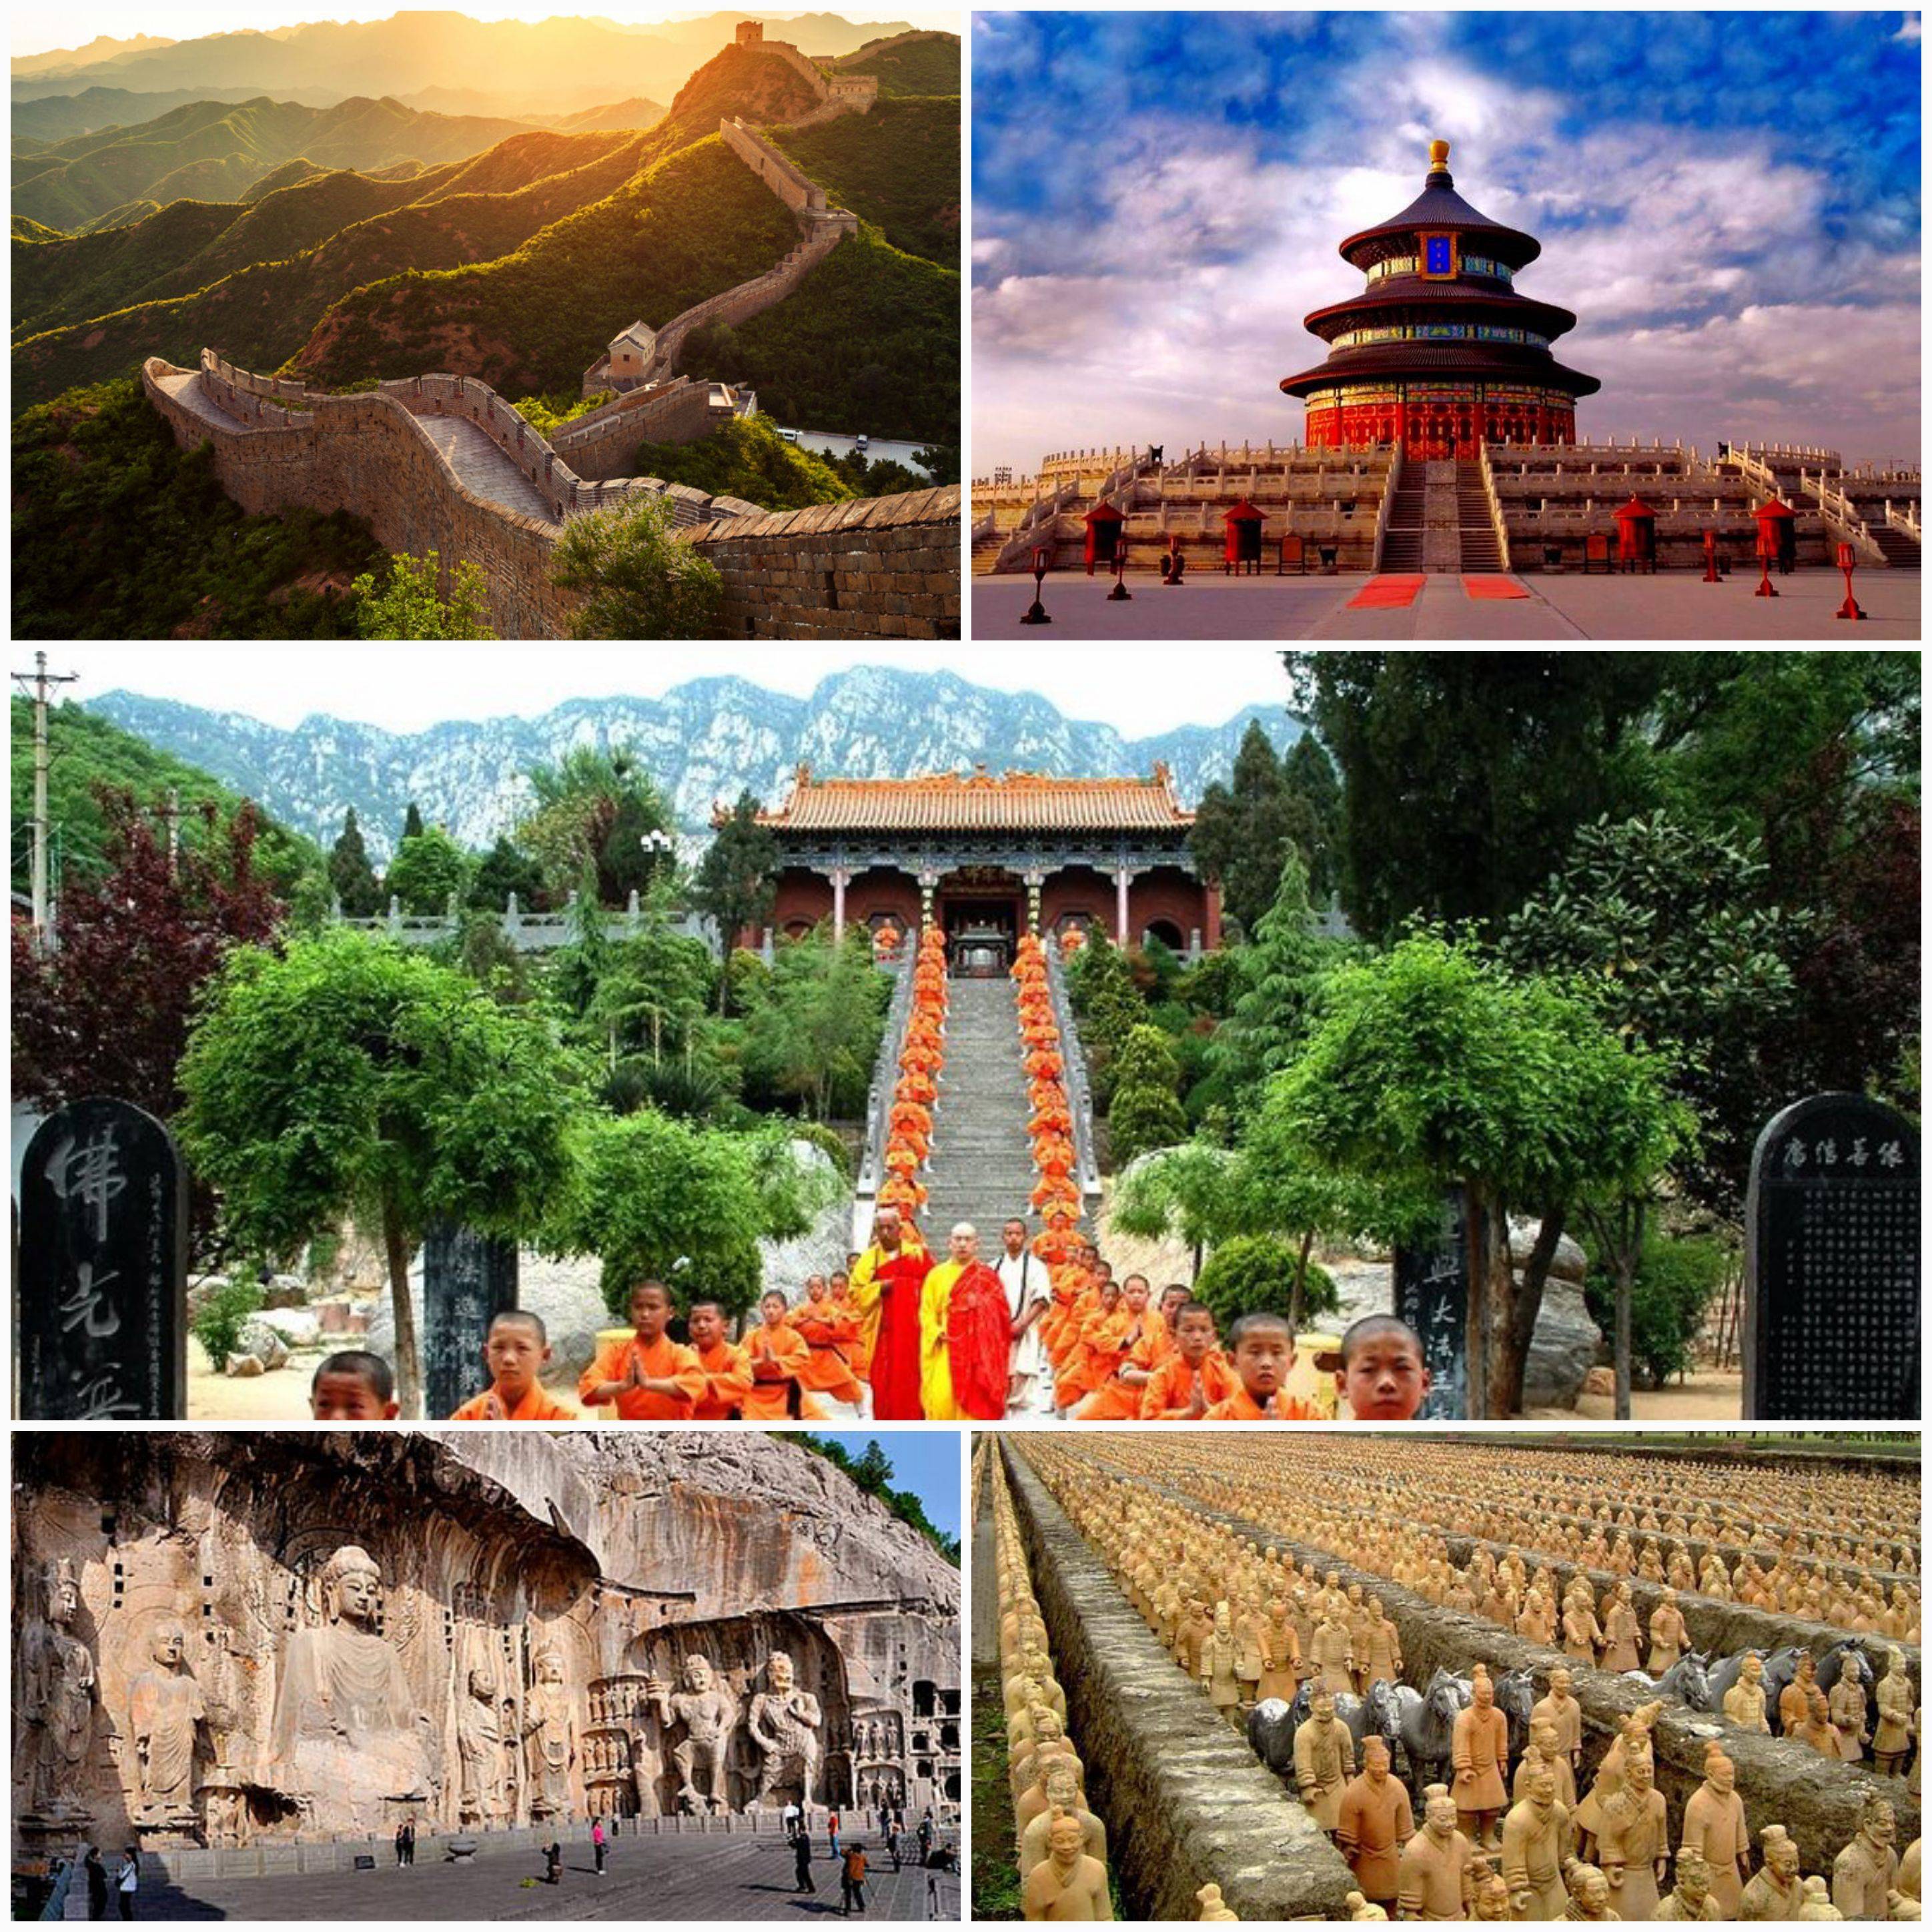 Достопримечательности китая, фото с названиями и описанием, чем знаменит китай, главные китайские храмы, самые красивые места и памятники